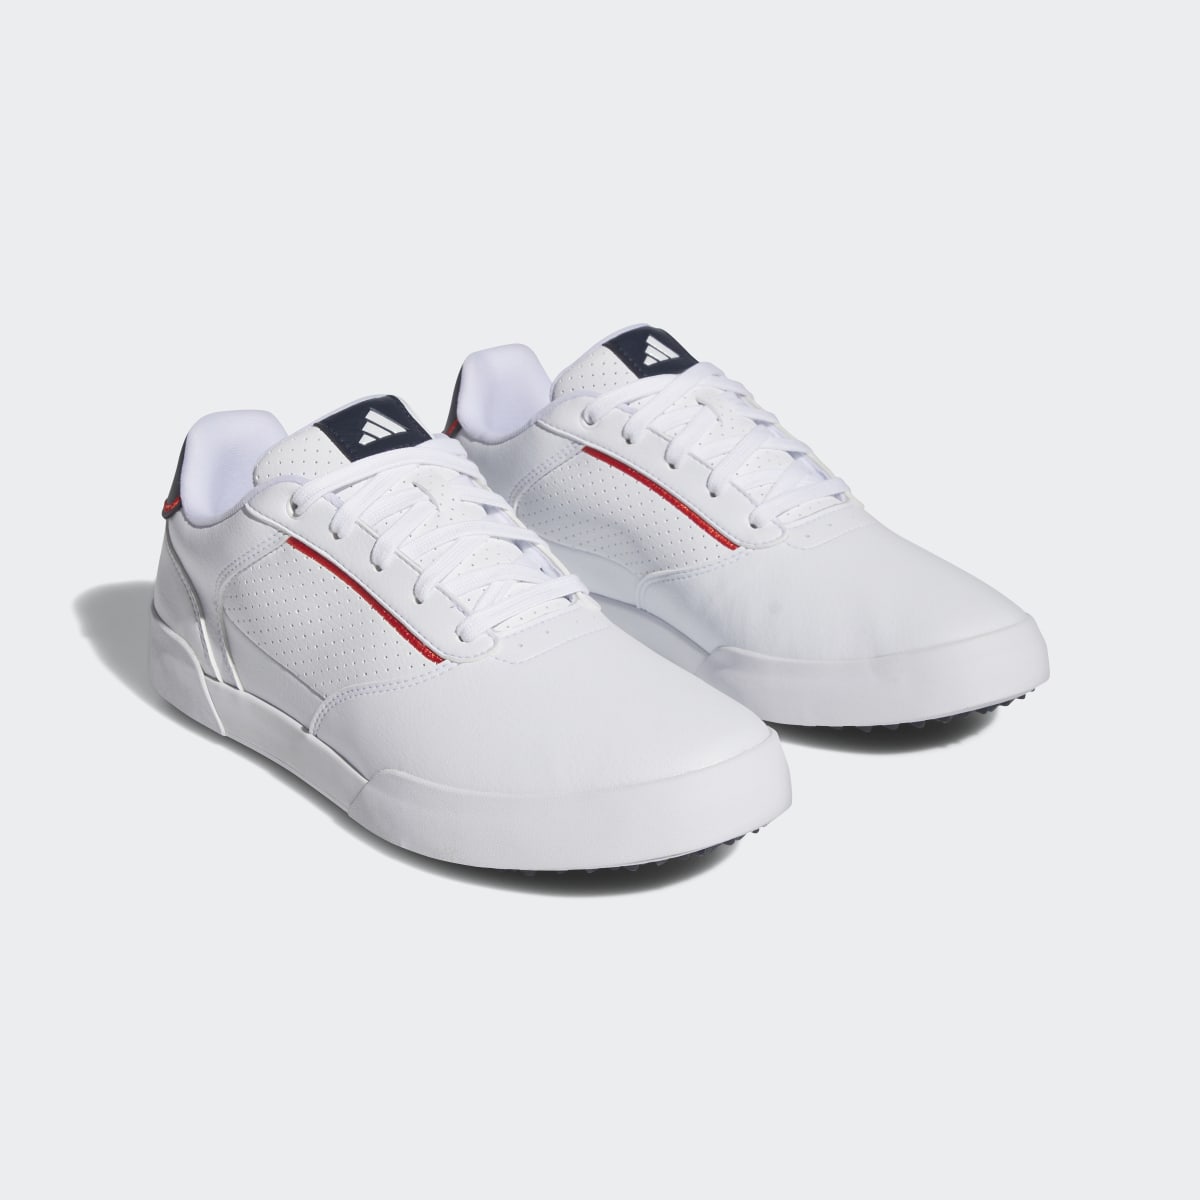 Adidas Retrocross Spikeless Golf Shoes. 8